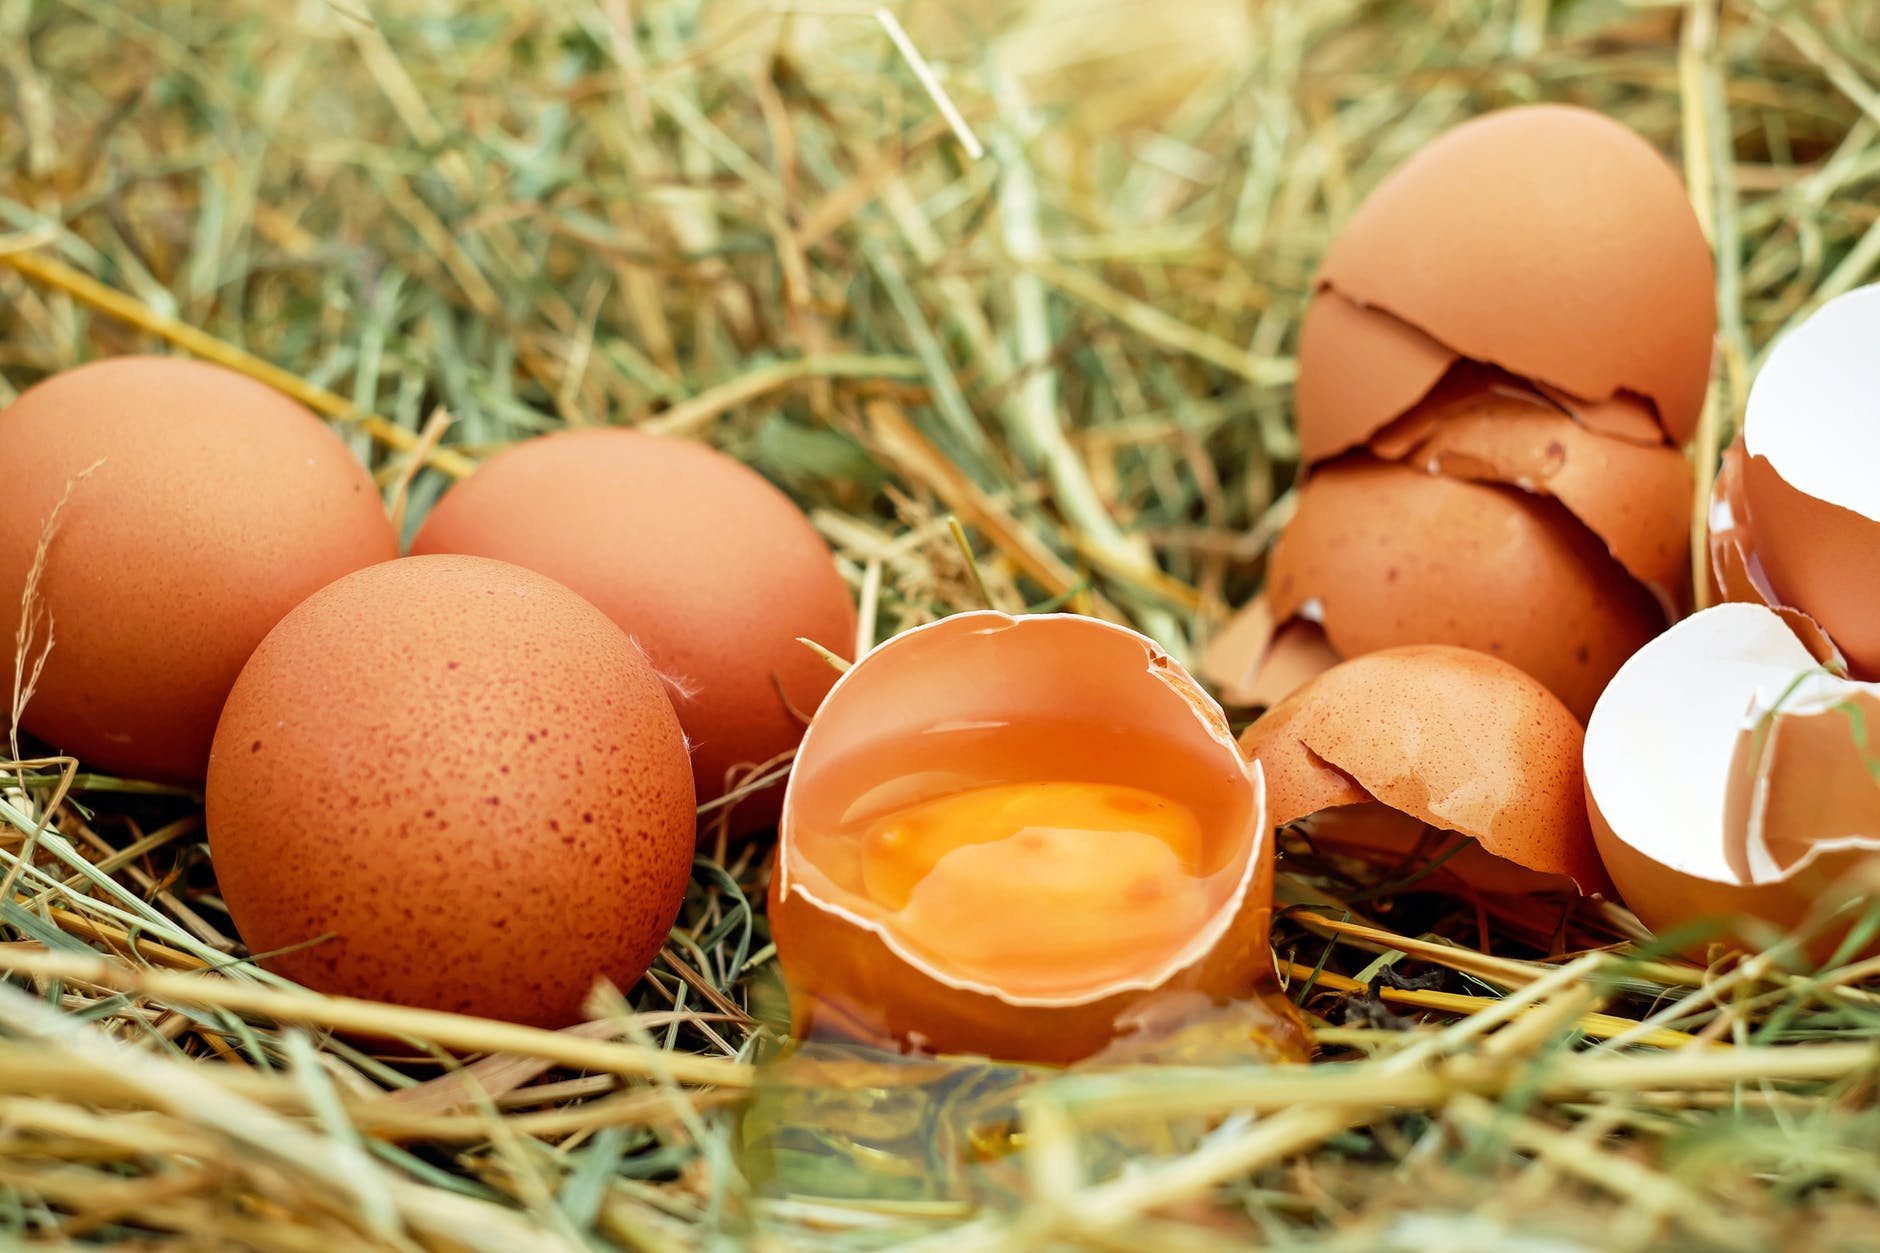 Yumurta kabuklarını sakın çöpe atmayın! Cilt bakımından temizliğe yumurta kabuklarının kullanım yöntemleri